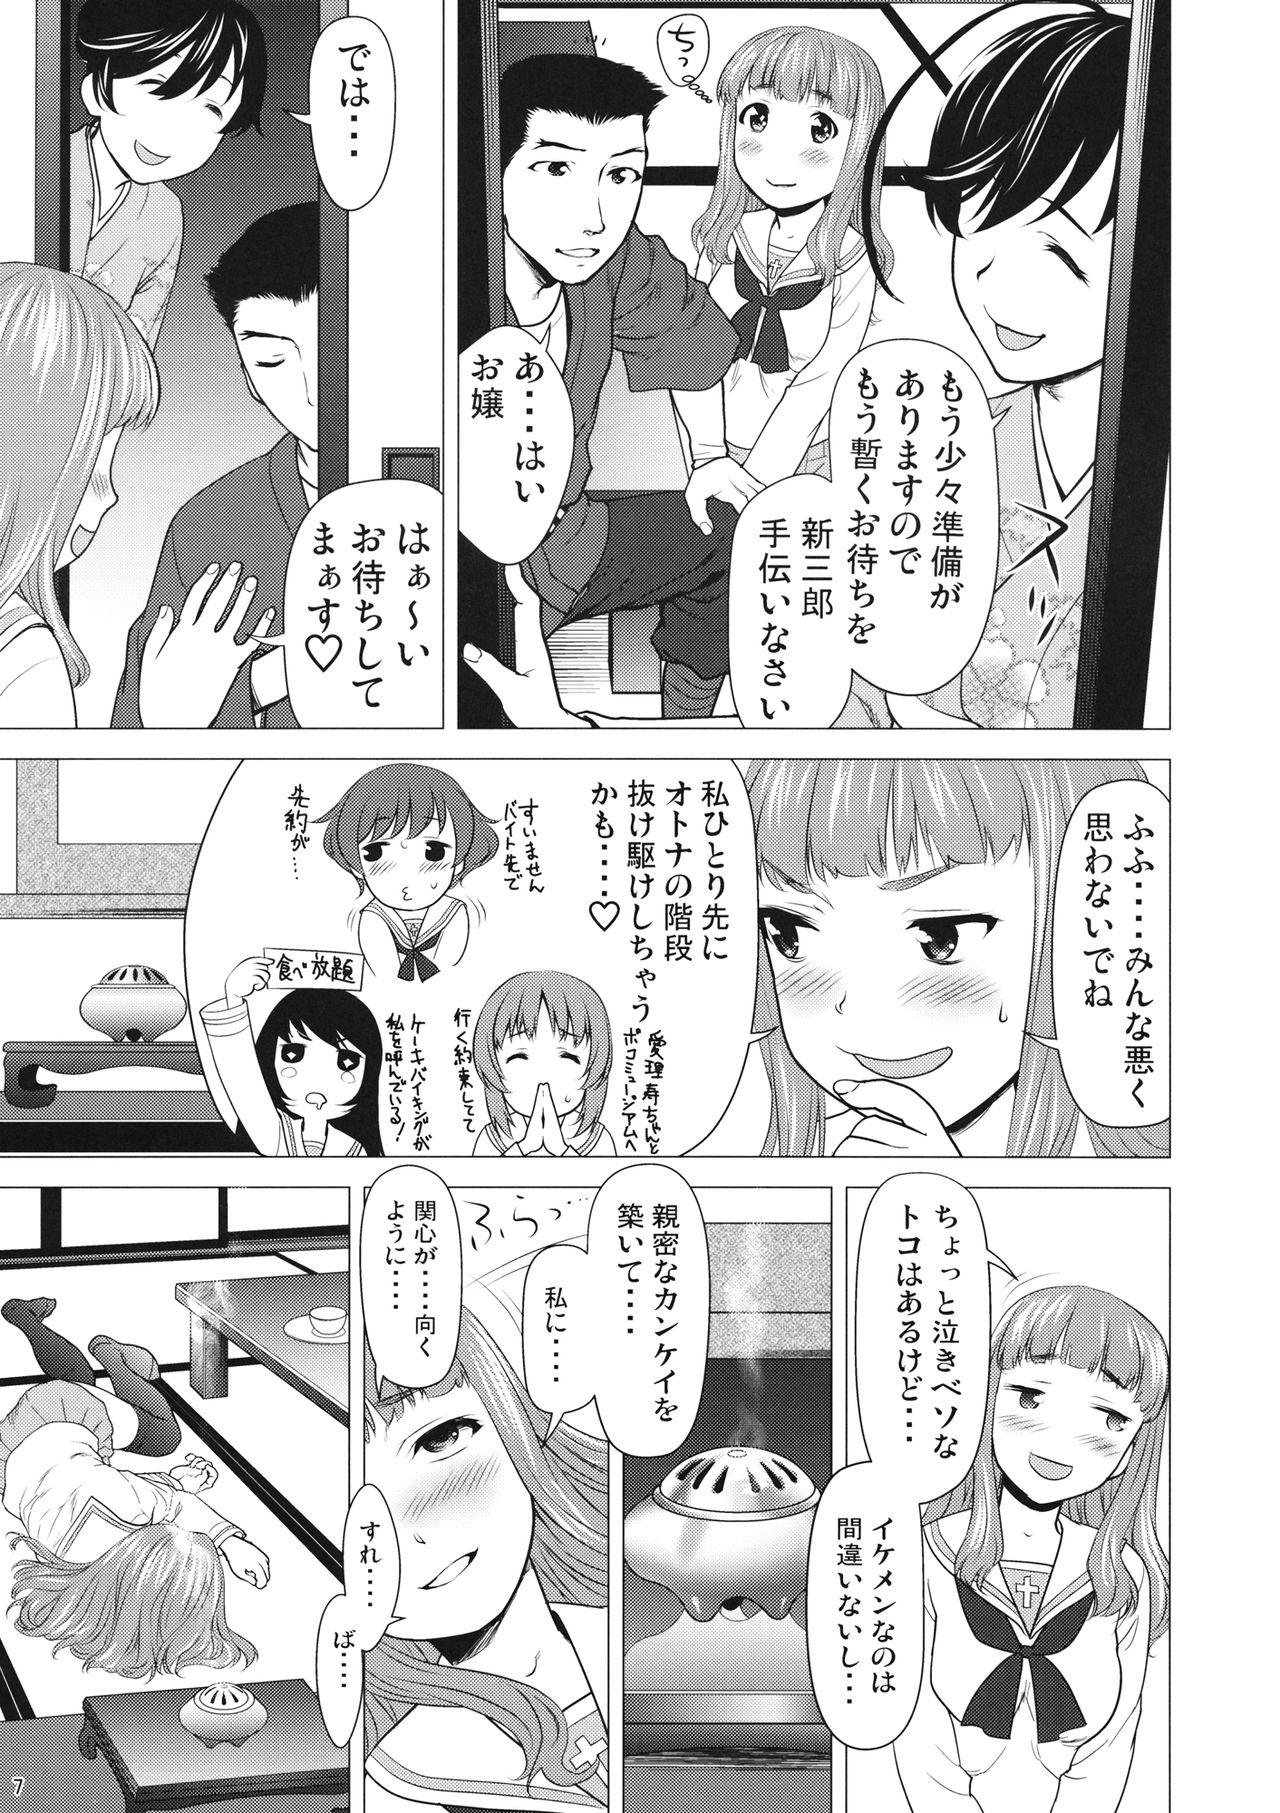 Com Isuzu no Shitsuke - Girls und panzer Leather - Page 6